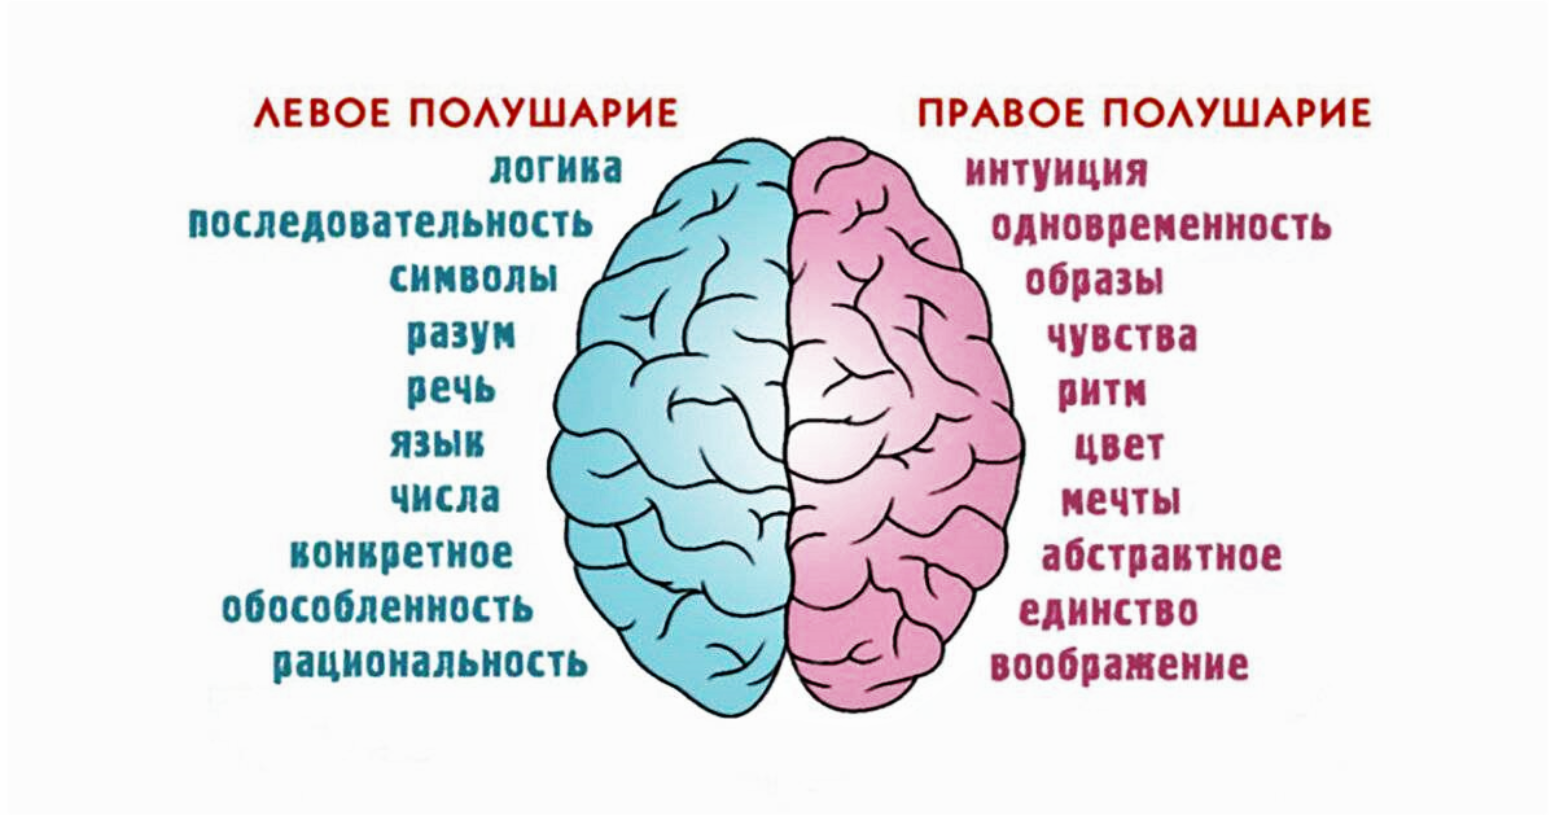 Нижнее полушарие мозга. Полушария мозга девое т правое. За что отвечает правое полушарие. За что отвечают полушария головного мозга человека левое и правое. За какие процессы головного мозга отвечает правое полушарие.